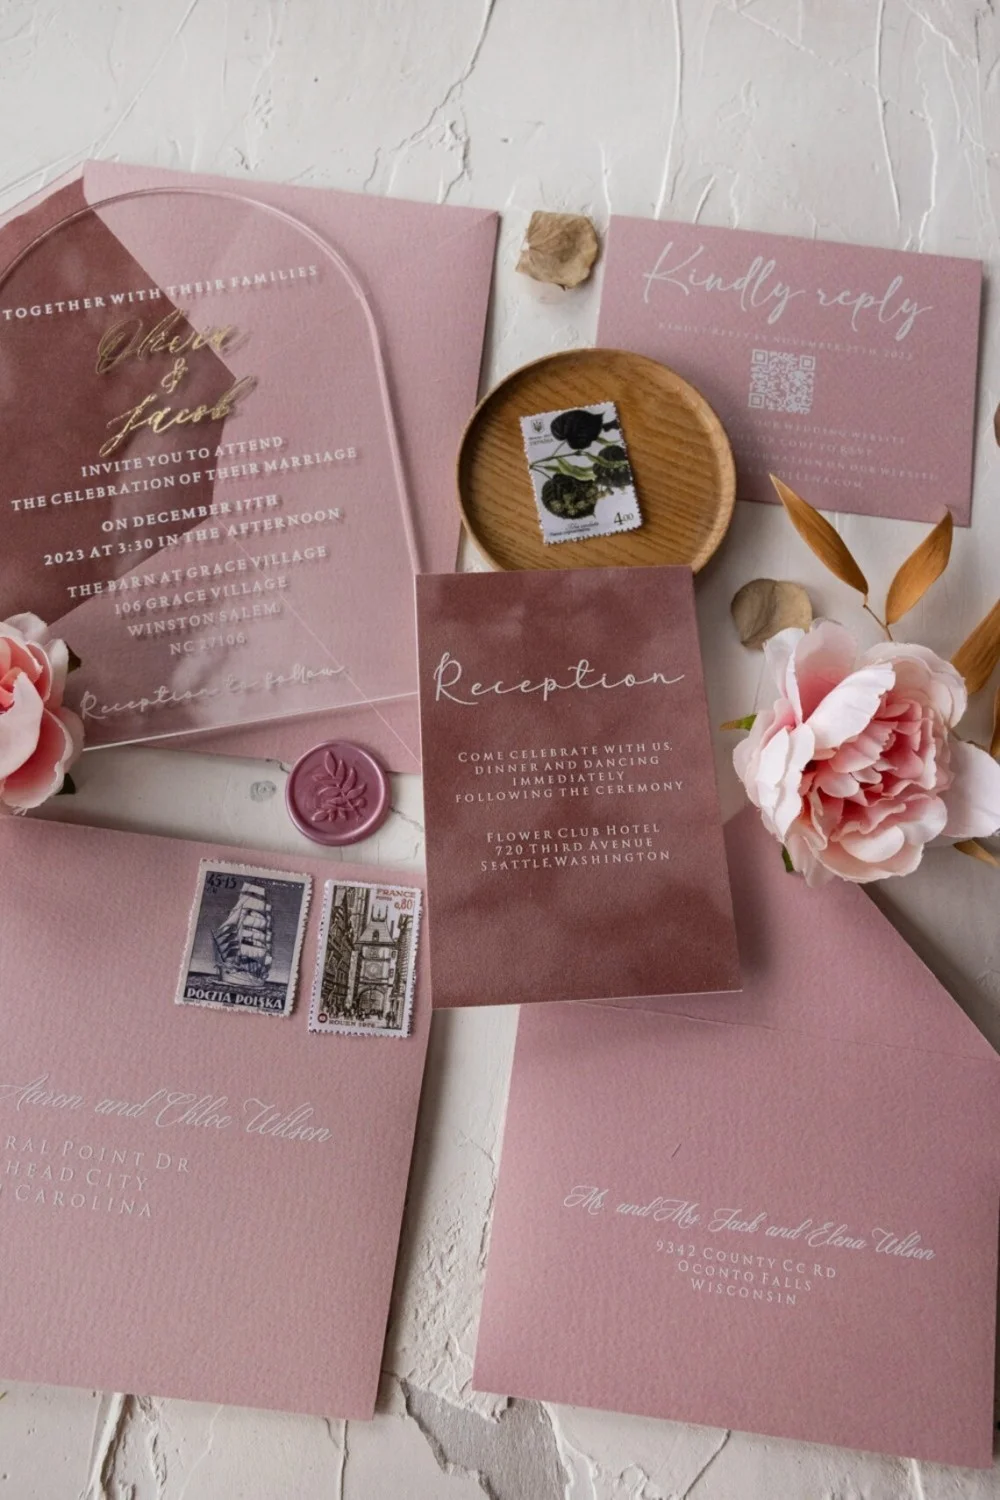 Vue d'ensemble de l'invitation de mariage en velours et acrylique.